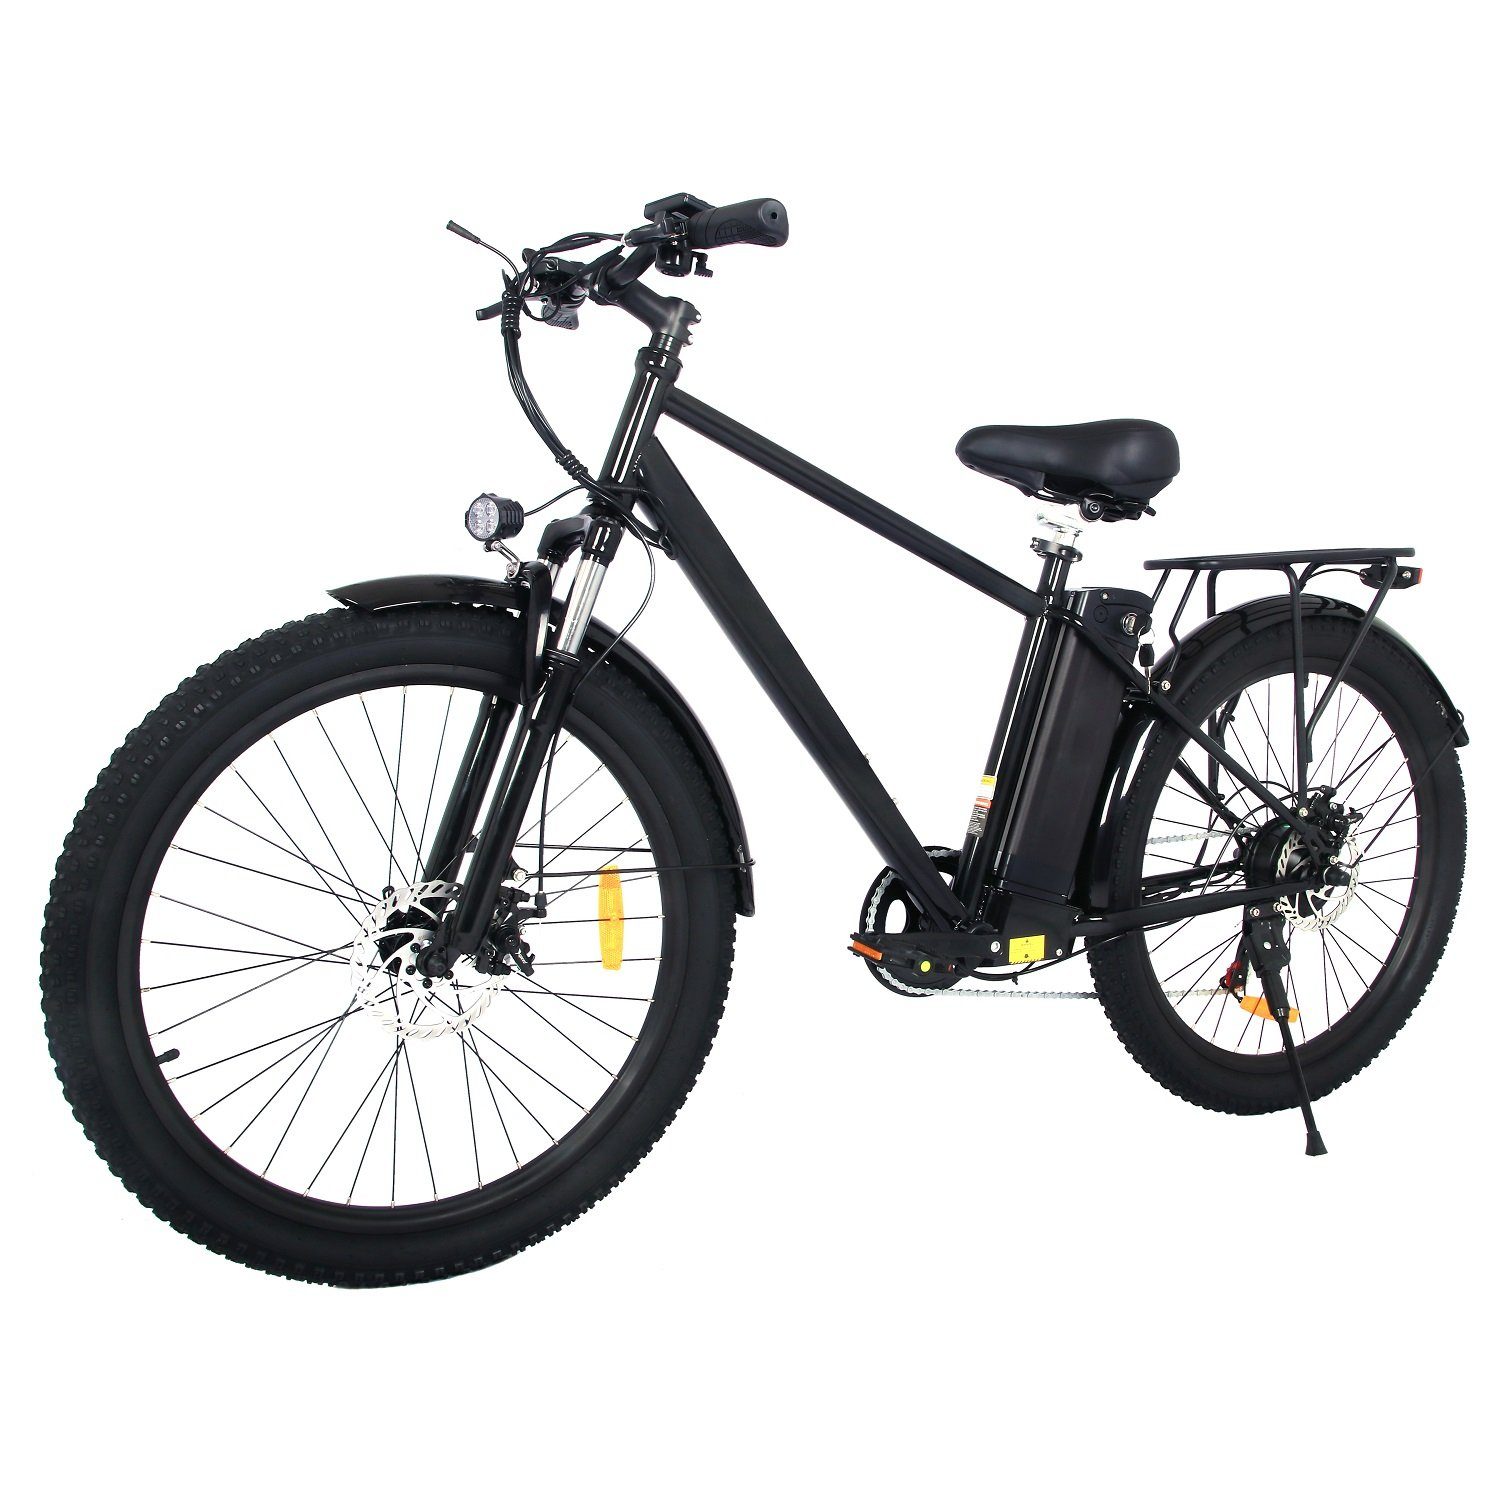 Docrooup E-Bike 26Zoll Citybike, Shimano 7-Gang,720Wh LED Ausleuchtung,Stvzo, 250W Heckmotor, (Optionaler Gashebel: Nach dem Einbau des Gashebels kann ein rein elektrischer Modus erreicht werden, Fahrmodi: Pedal-Modus und Power-Assist-Modus)